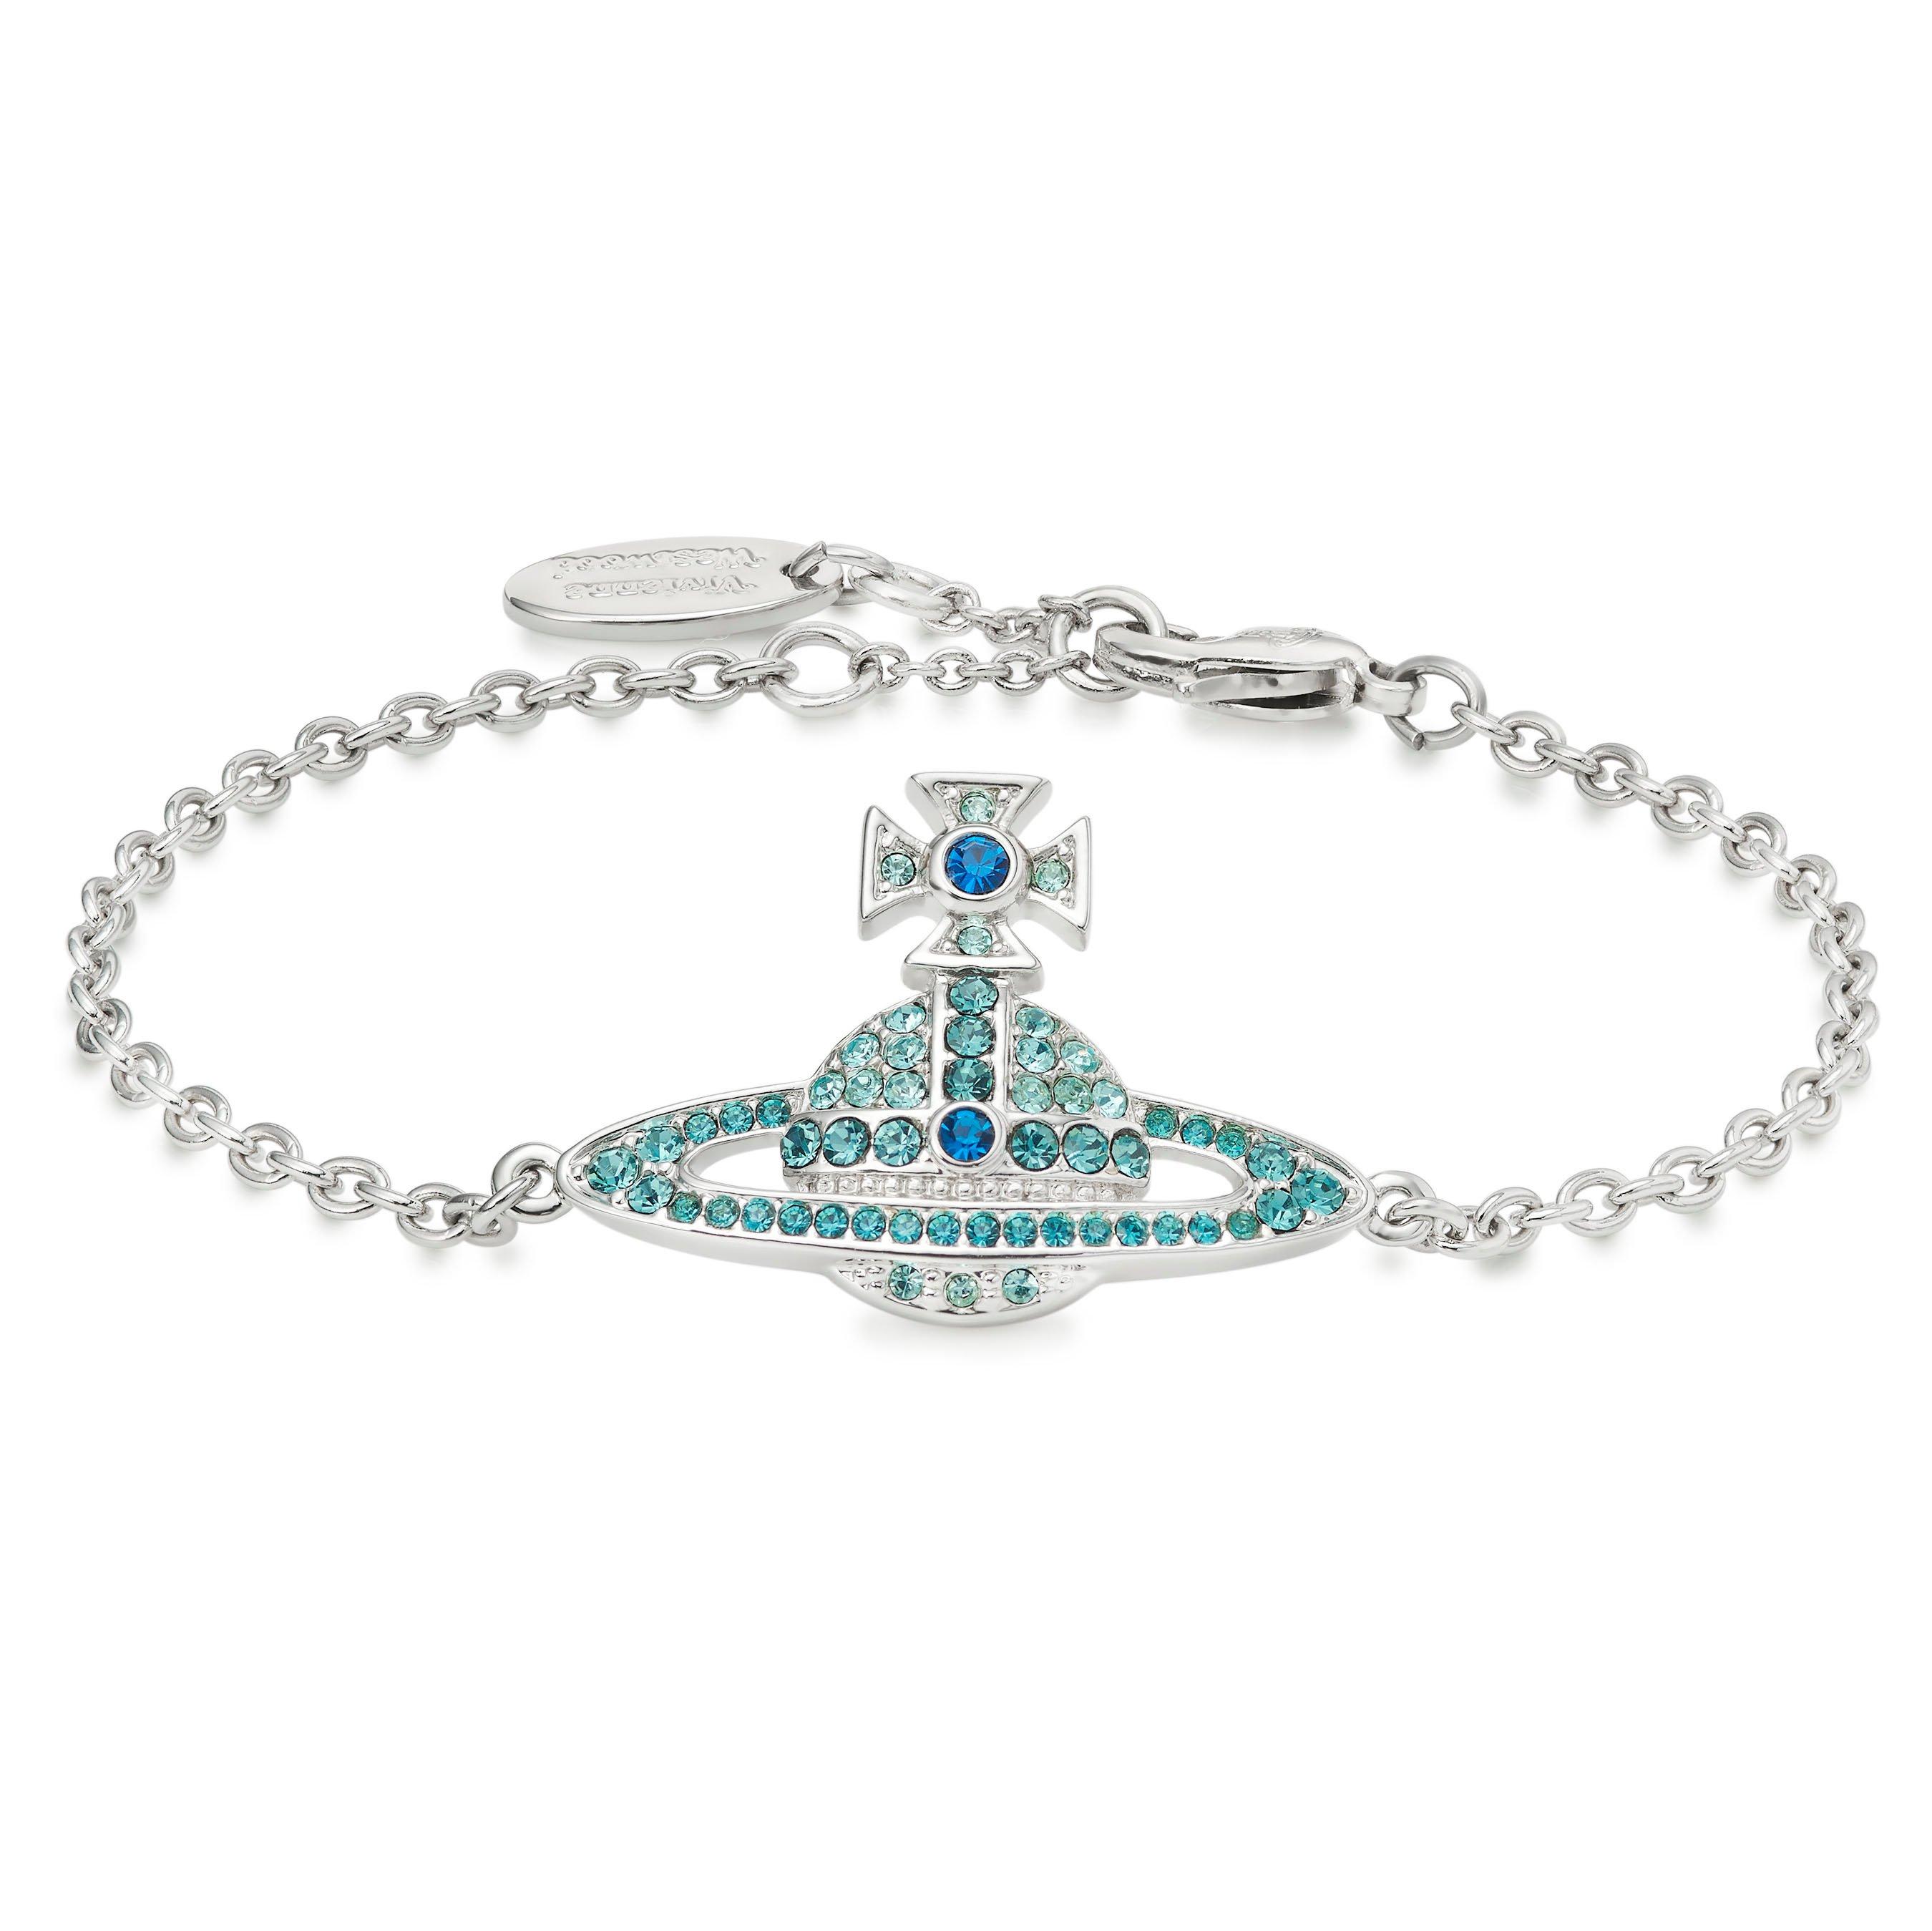 Vivienne Westwood Kika Aqua Bracelet | 0130033 | Beaverbrooks the Jewellers